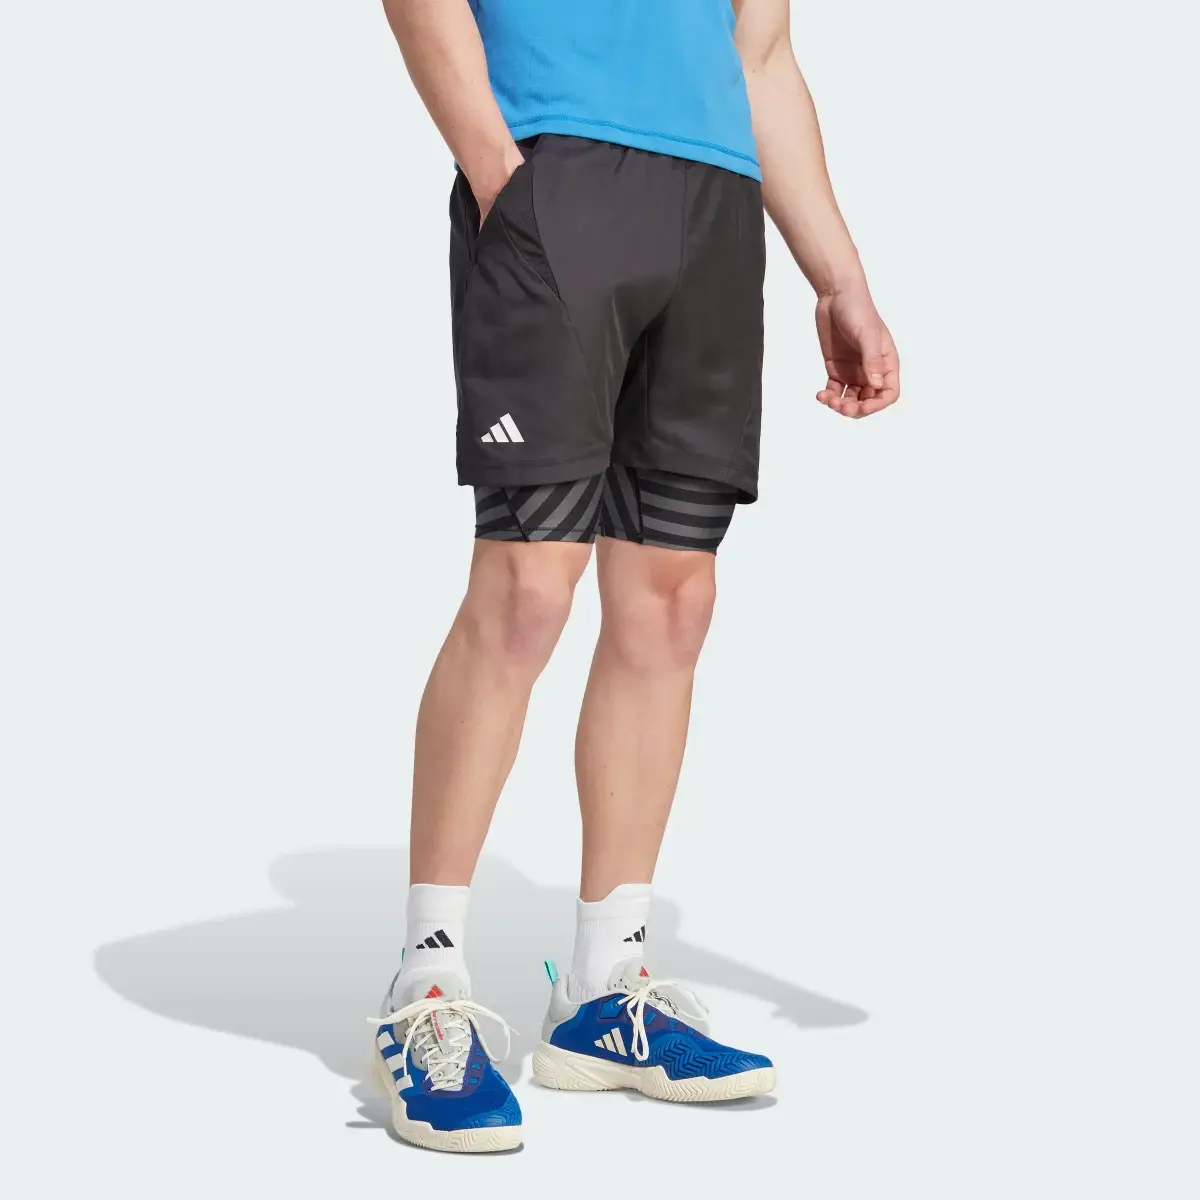 Adidas Shorts de Tenis AEROREADY Dos en Uno Pro. 1